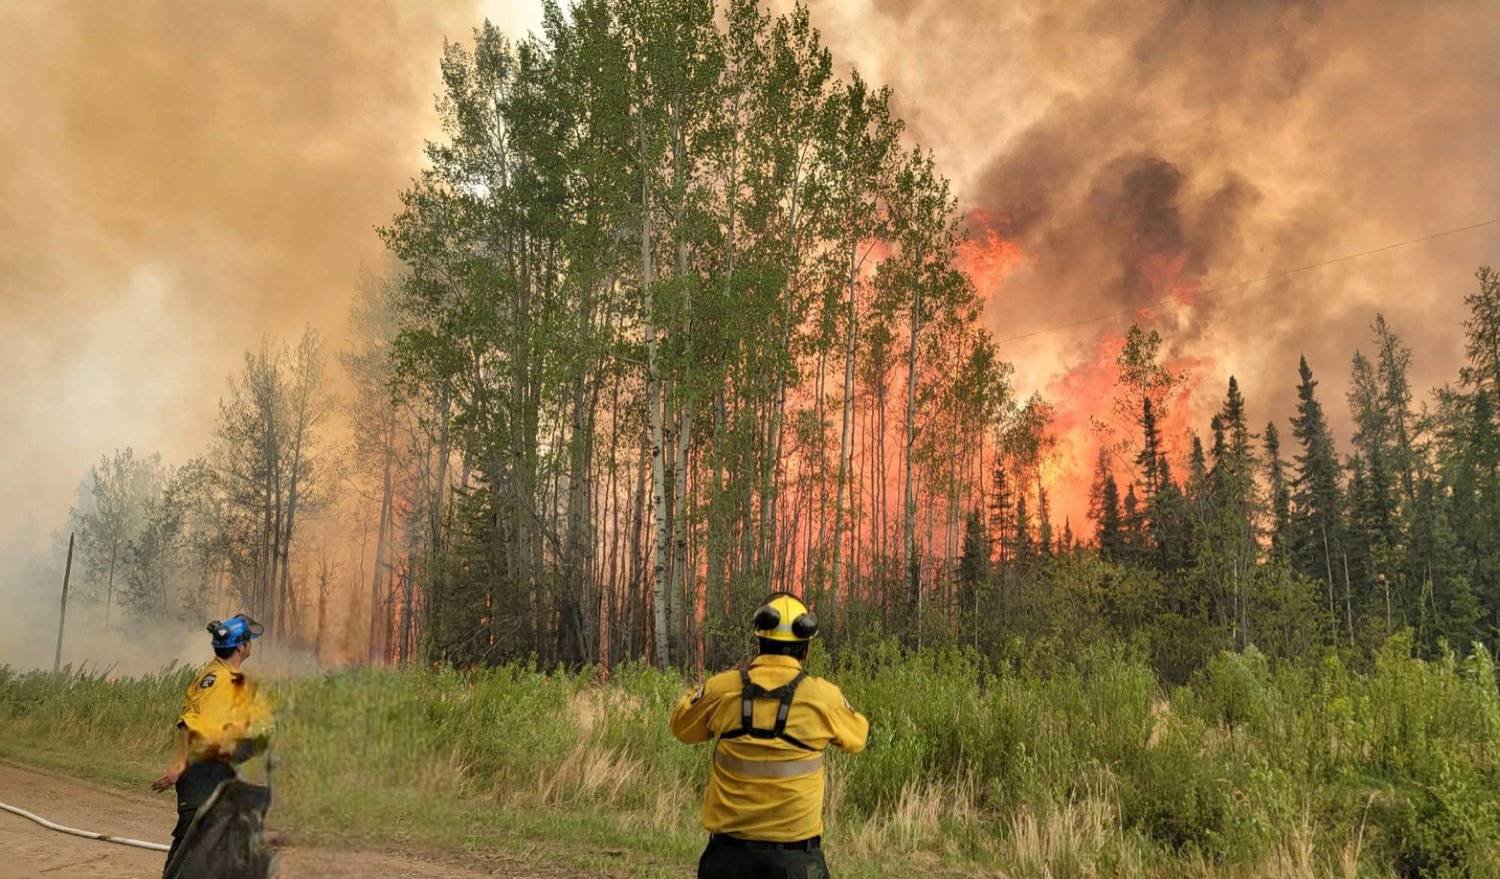 رجال إطفاء ينظرون إلى النيران المشتعلة في إحدى غابات ألبرتا بكندا (رويترز)